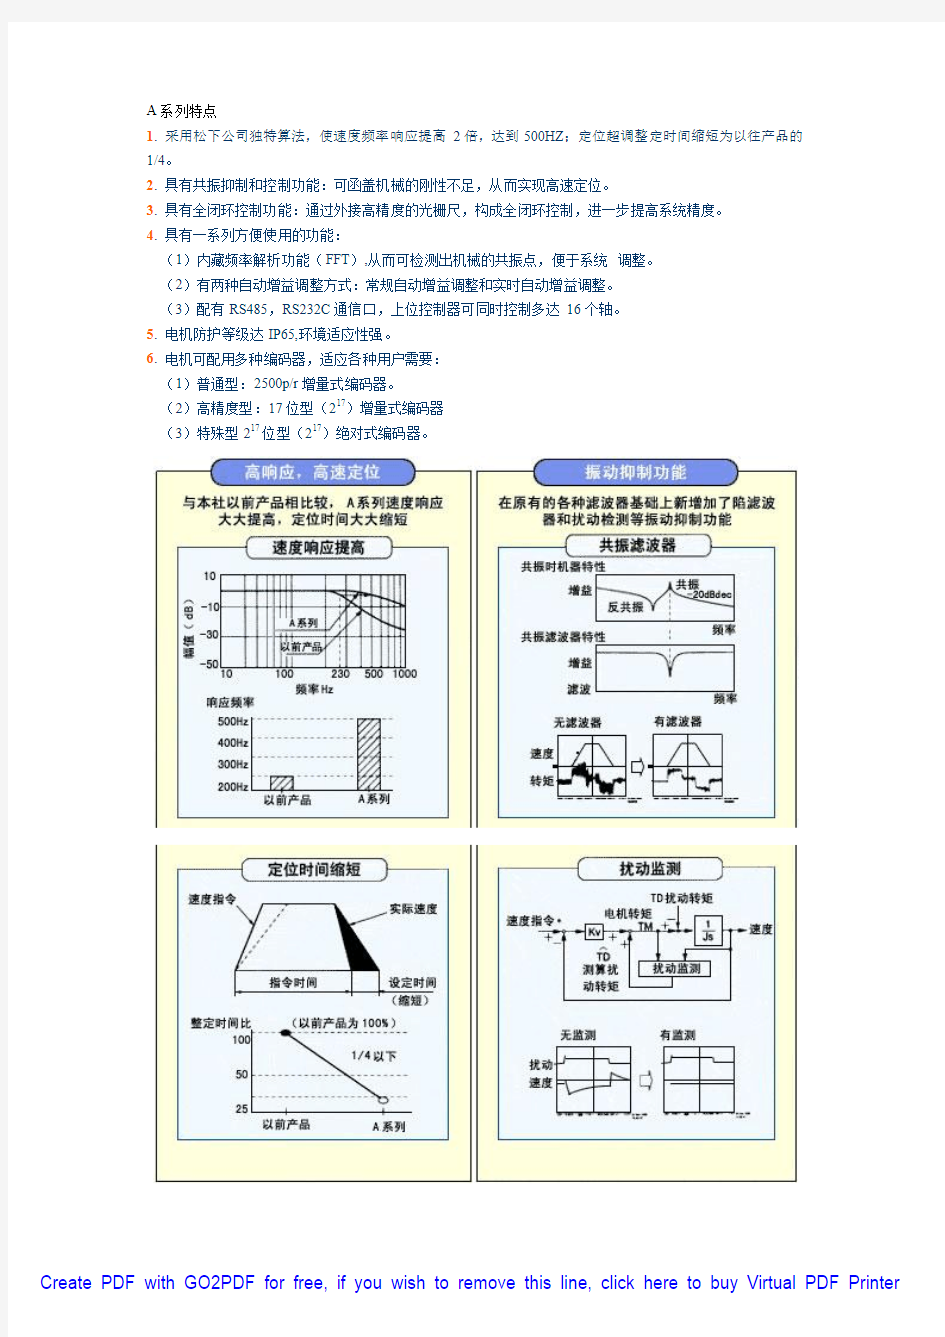 松下A 系列伺服电机手册(中文)